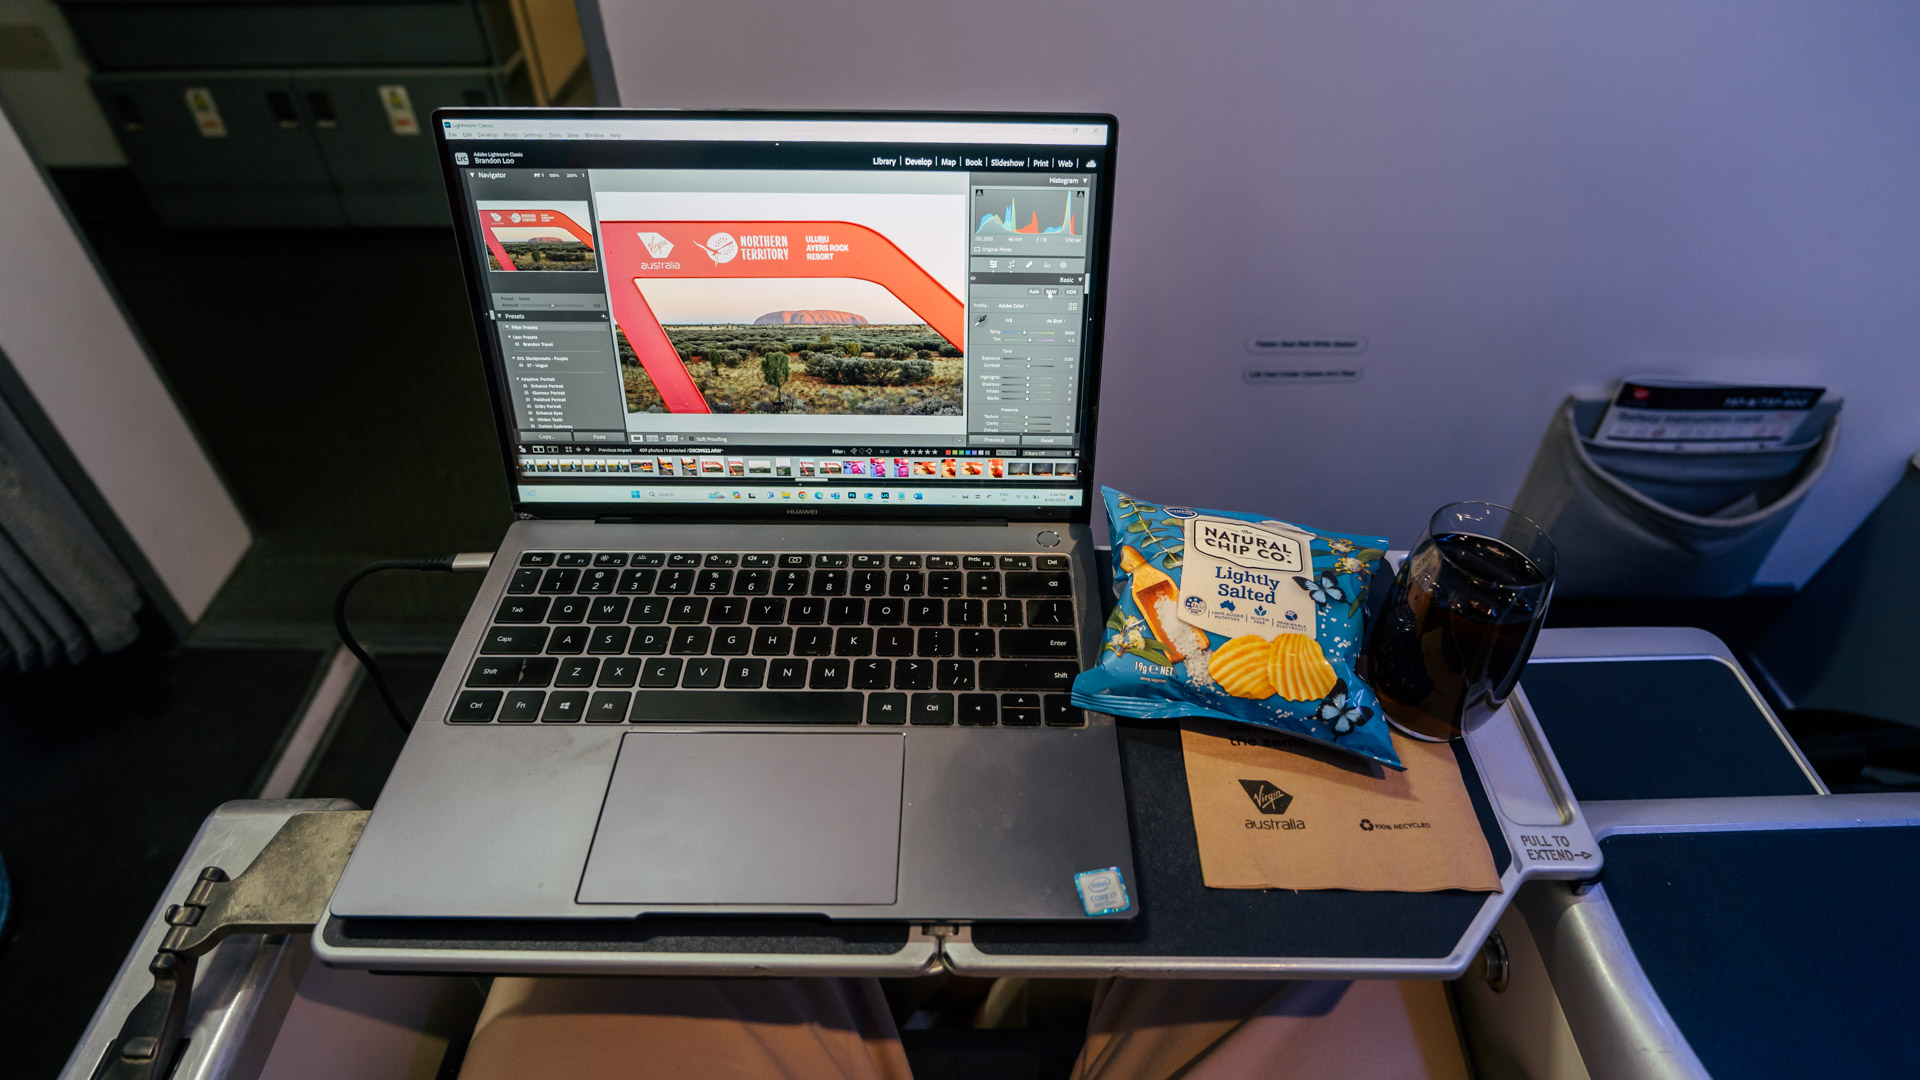 Virgin Australia 737 Business Class laptop